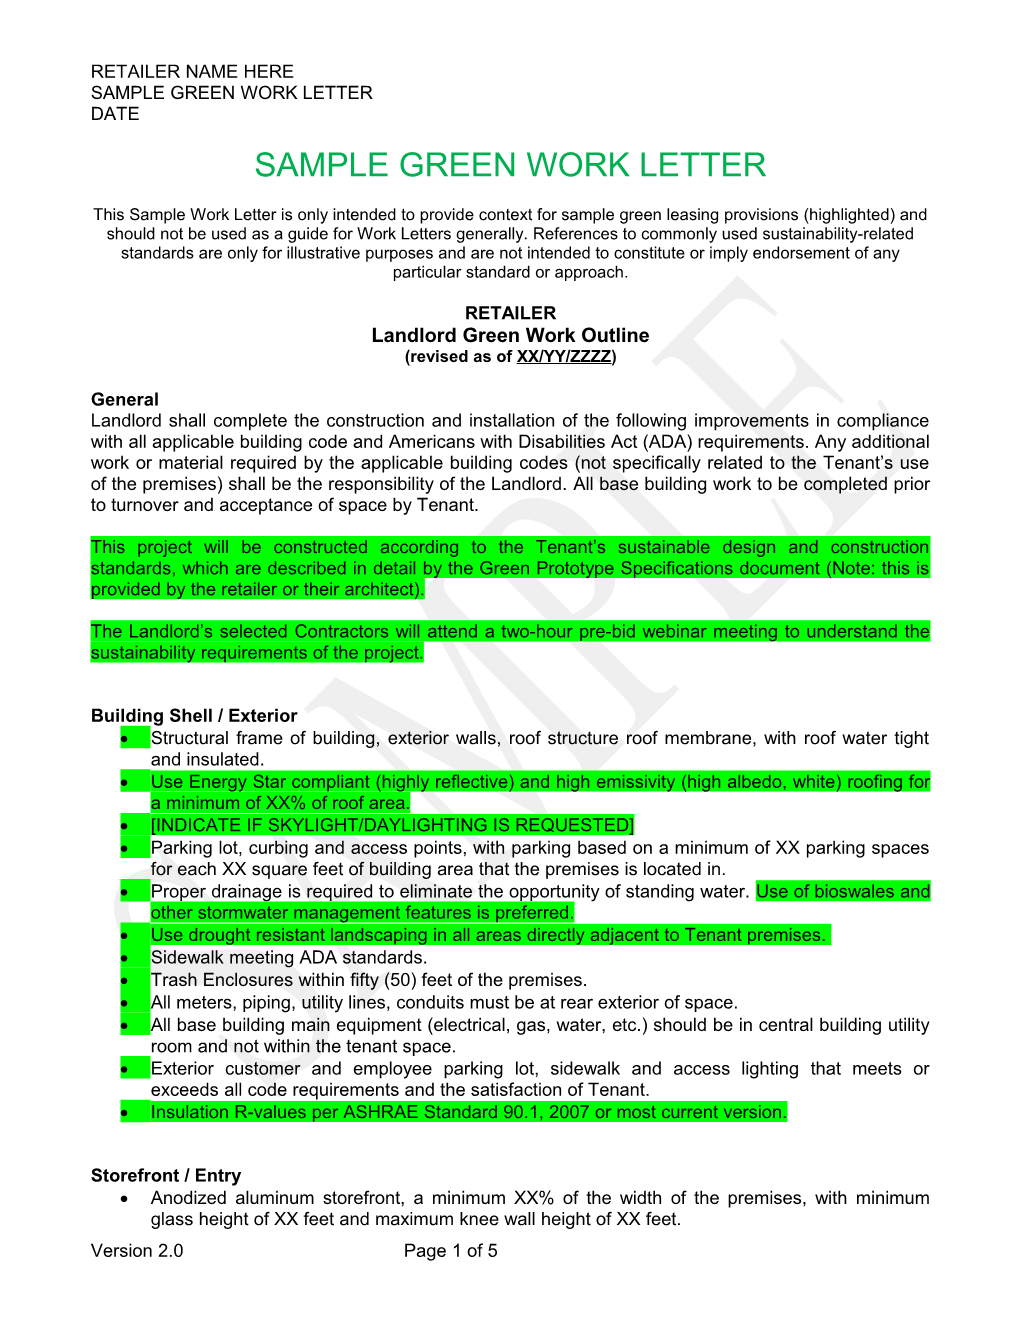 Sample Green Work Letter